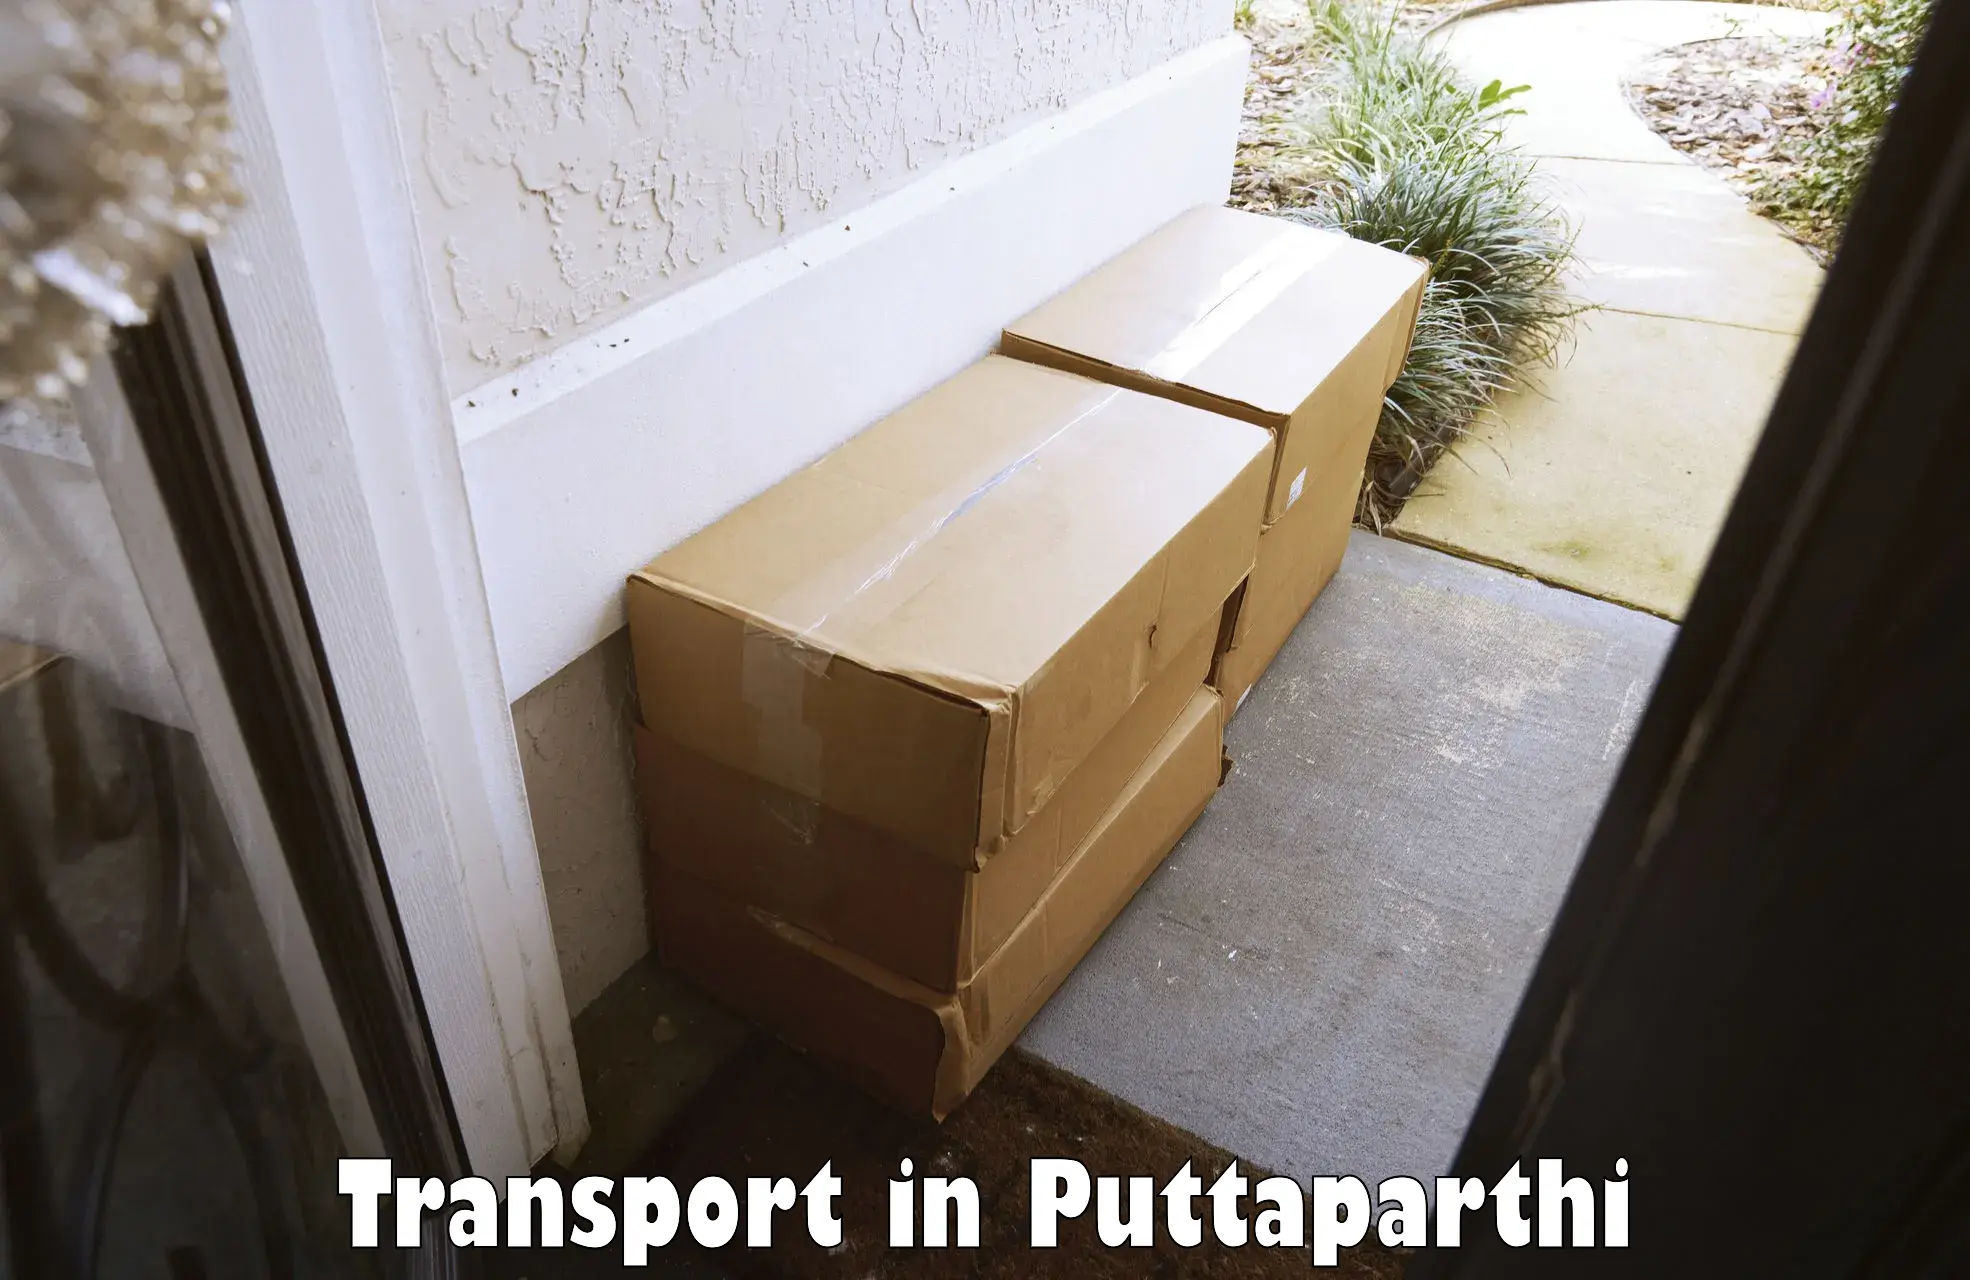 Furniture transport service in Puttaparthi